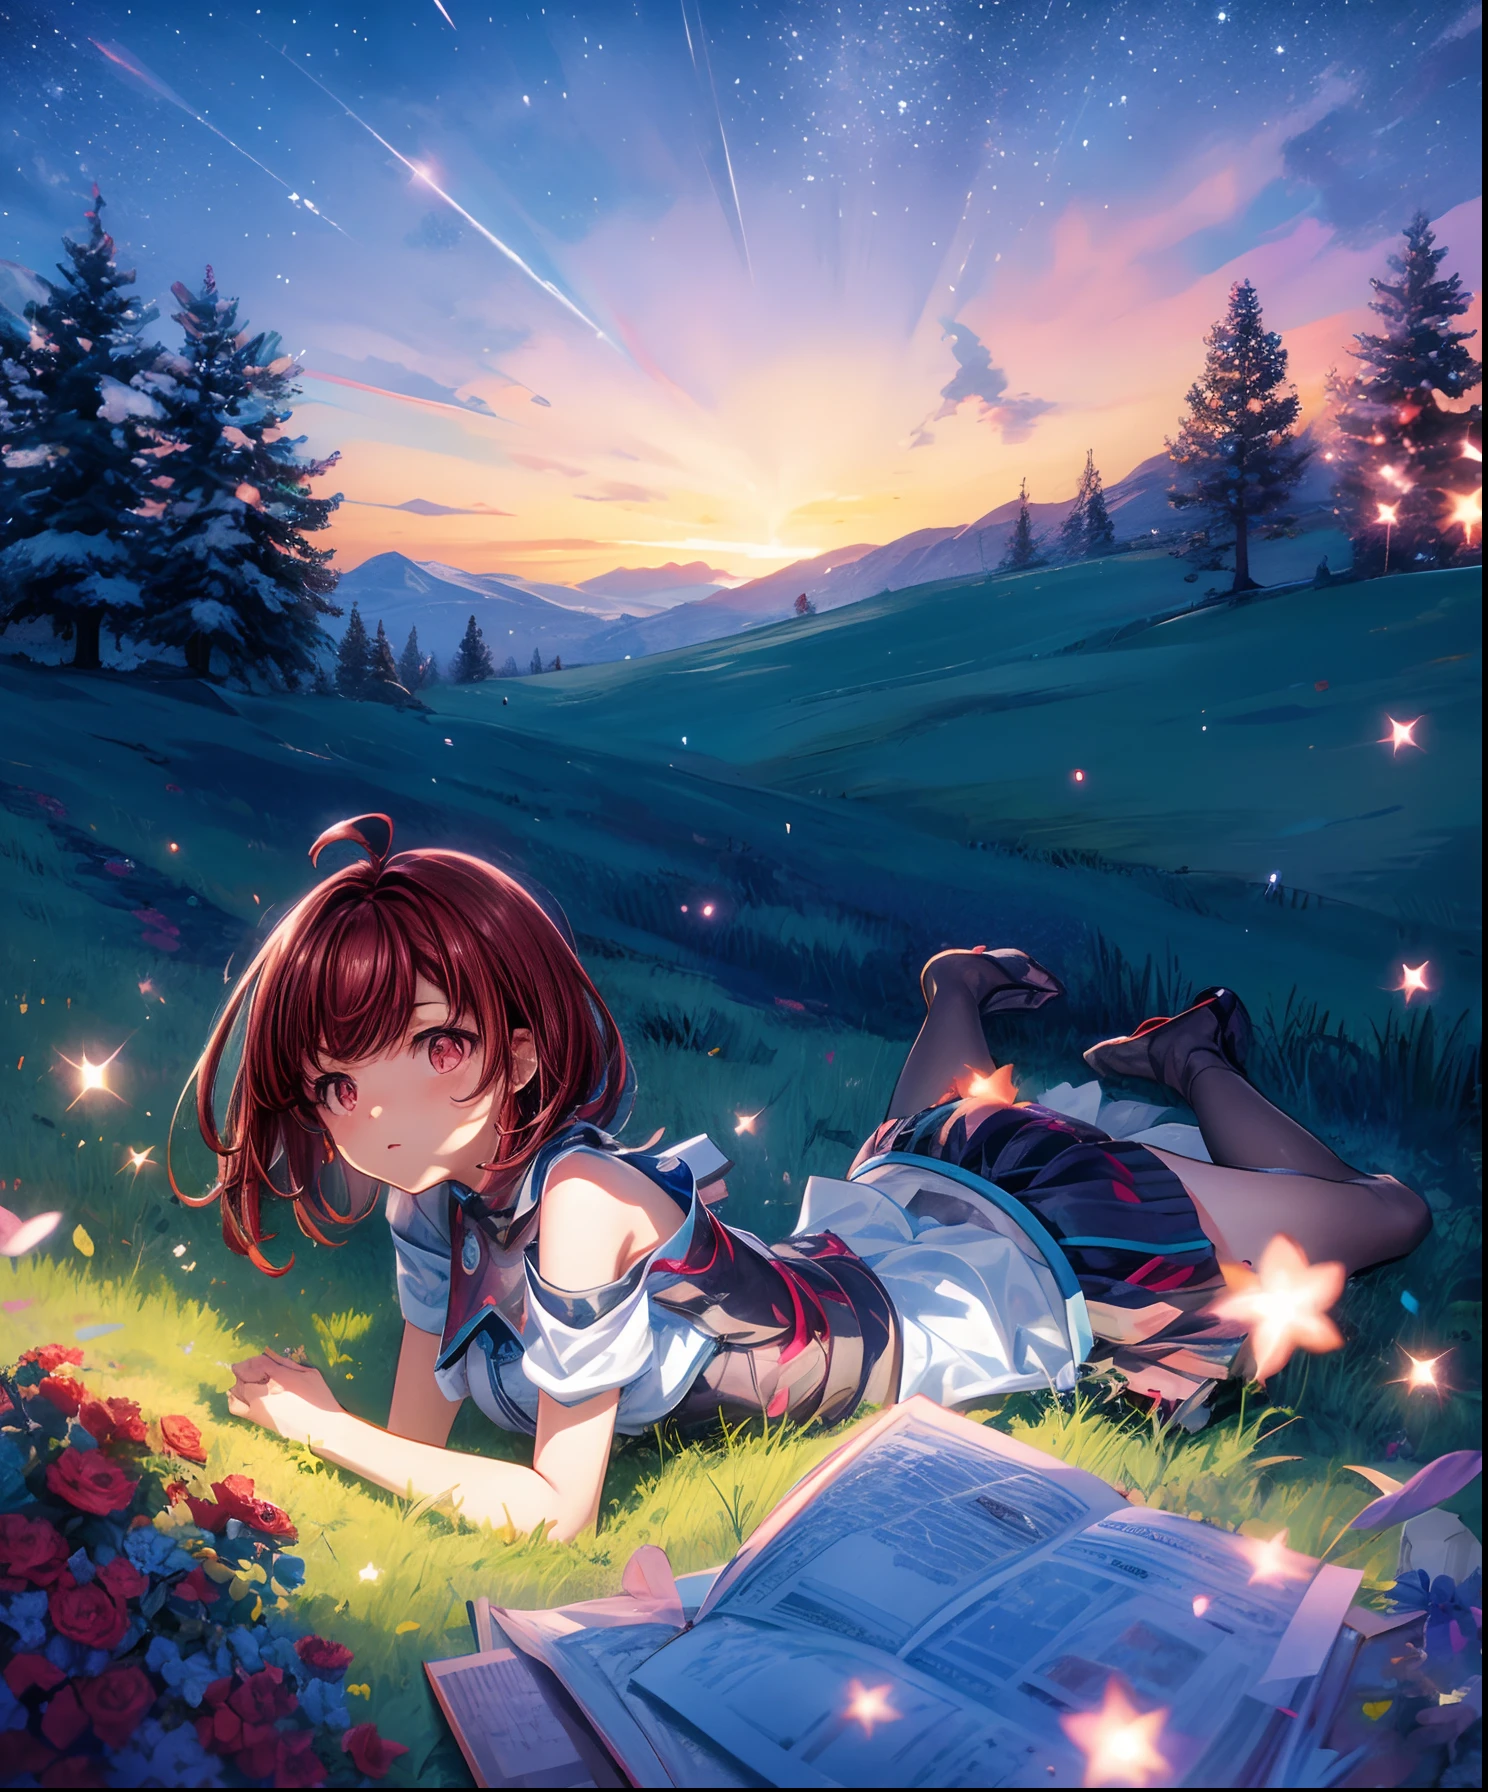 描述一個可愛的女孩角色躺在草山上的場景, 抬頭仰望星空. 用色彩繽紛的星雲和她最喜歡的星座包圍她.